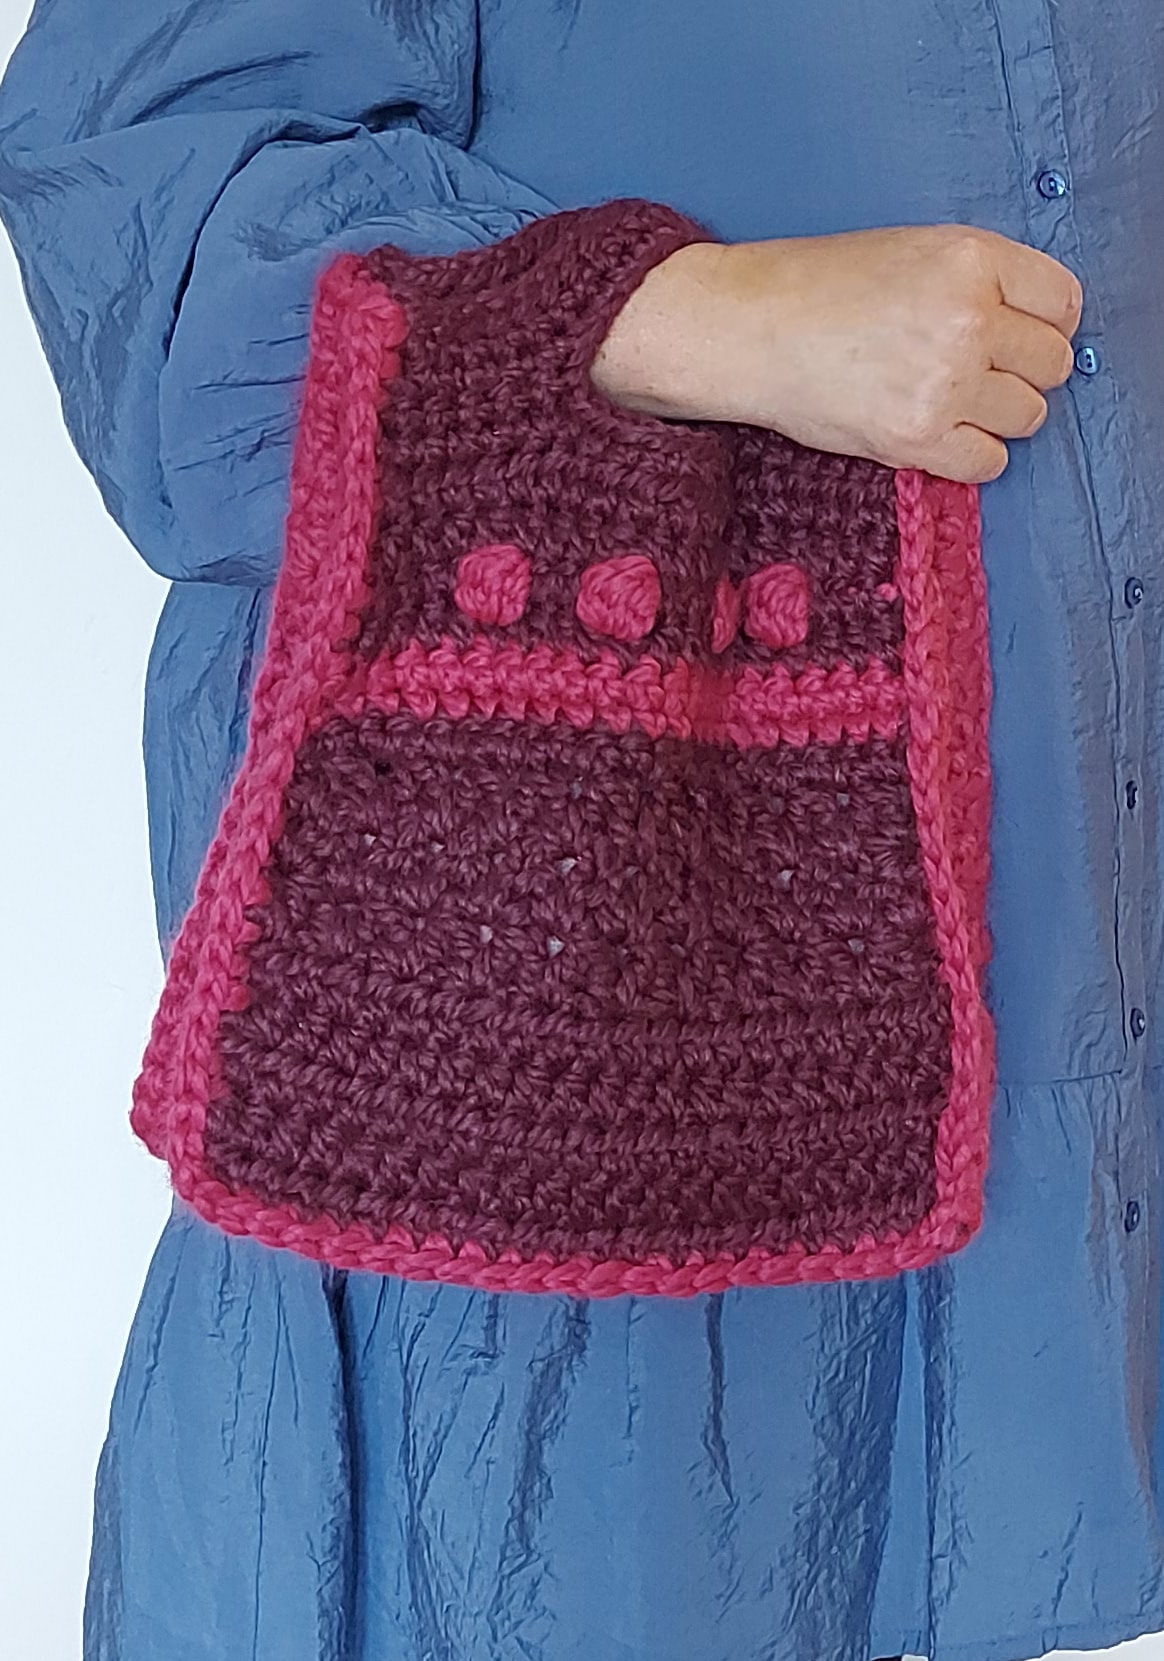 Crochet Handbag - Knit and Crochet Blog